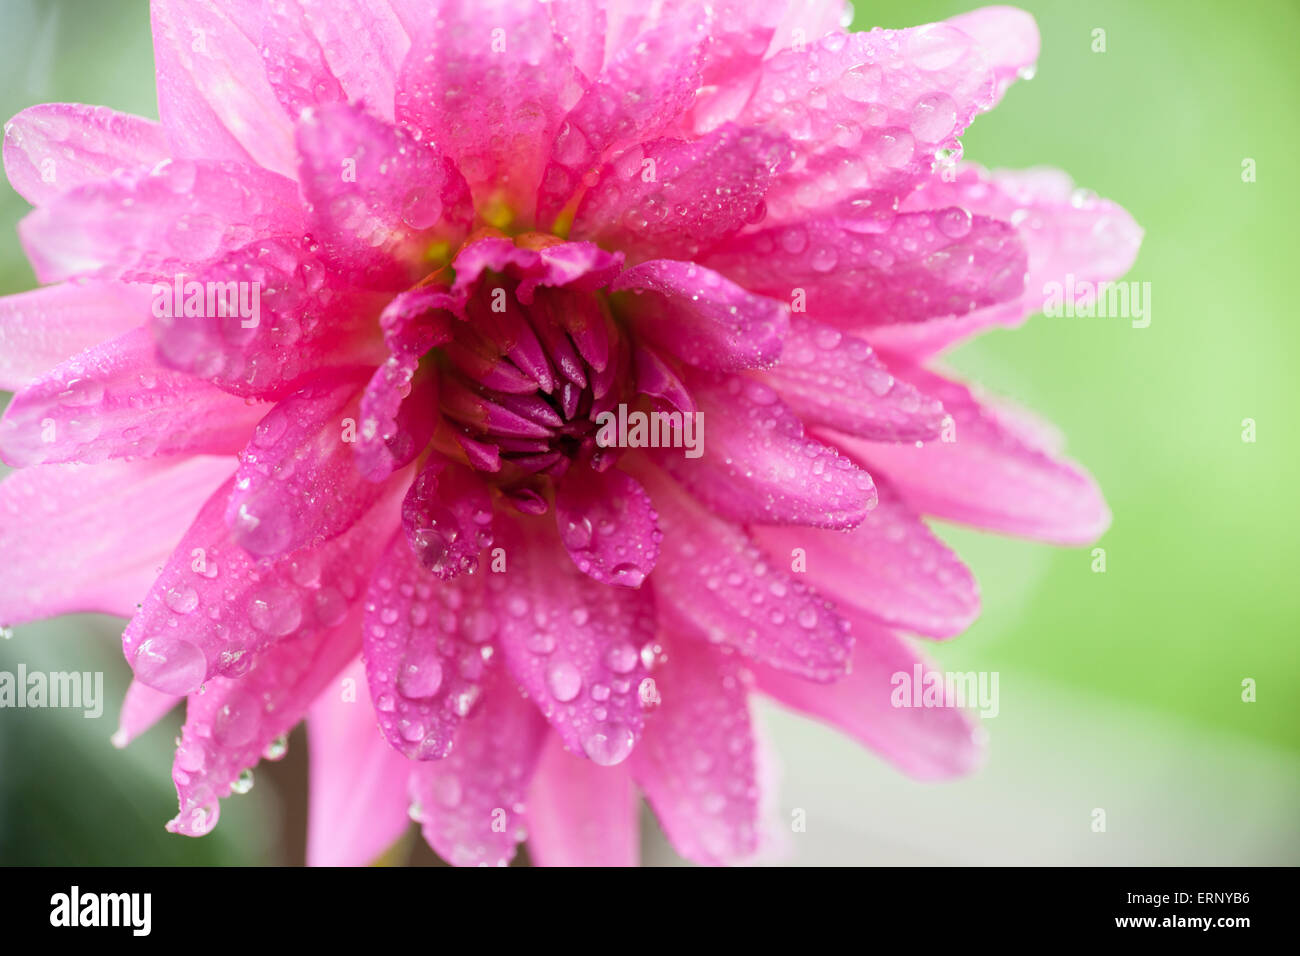 Un dahlia rose est recouvert de petites gouttelettes d'eau. Photo a une faible profondeur de champ avec flou. Banque D'Images